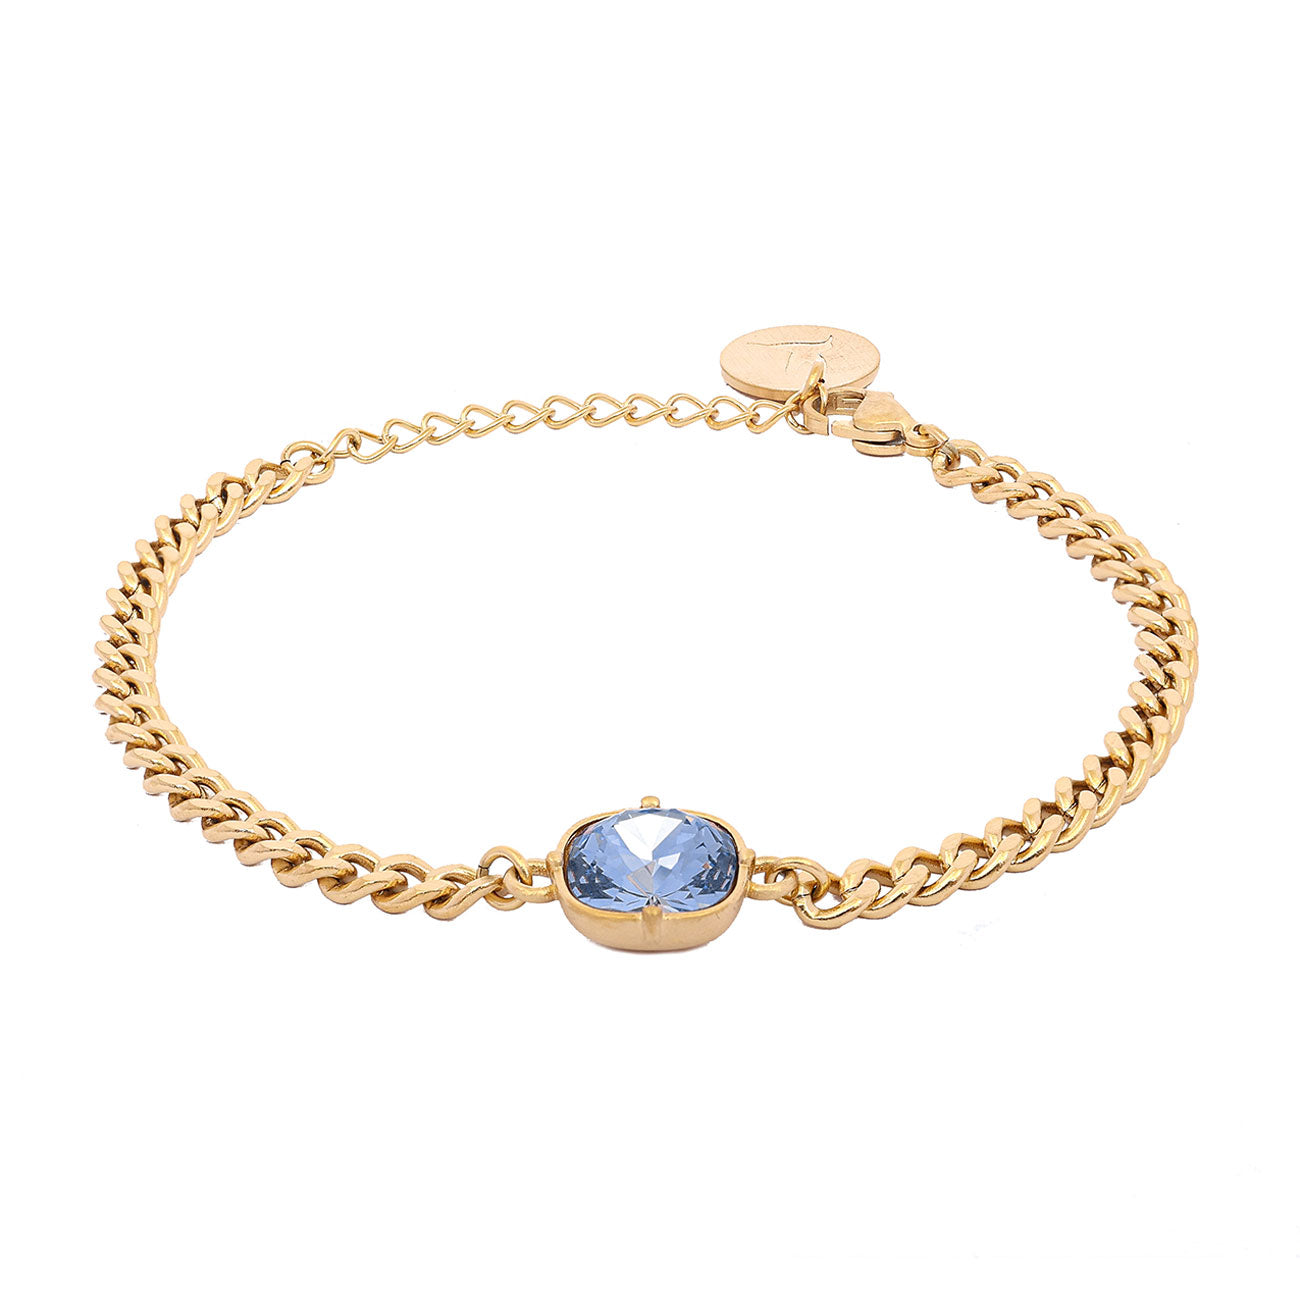 Carla Swarovski bracelet, Denim blue